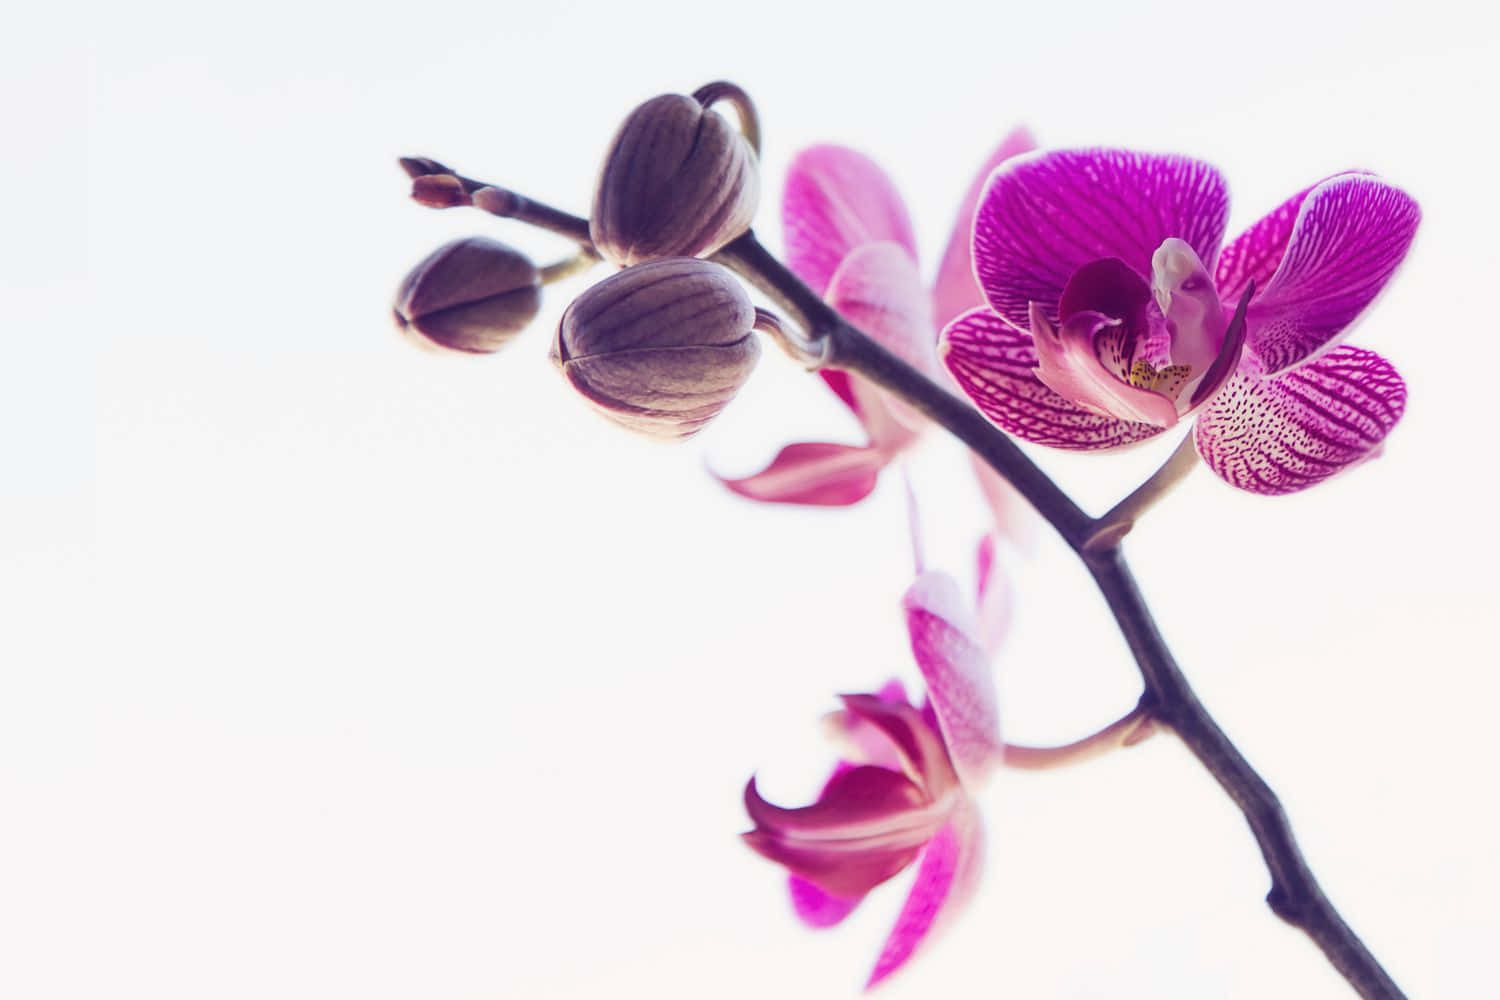 Caption: Elegant Orchid Arrangement in Full Bloom